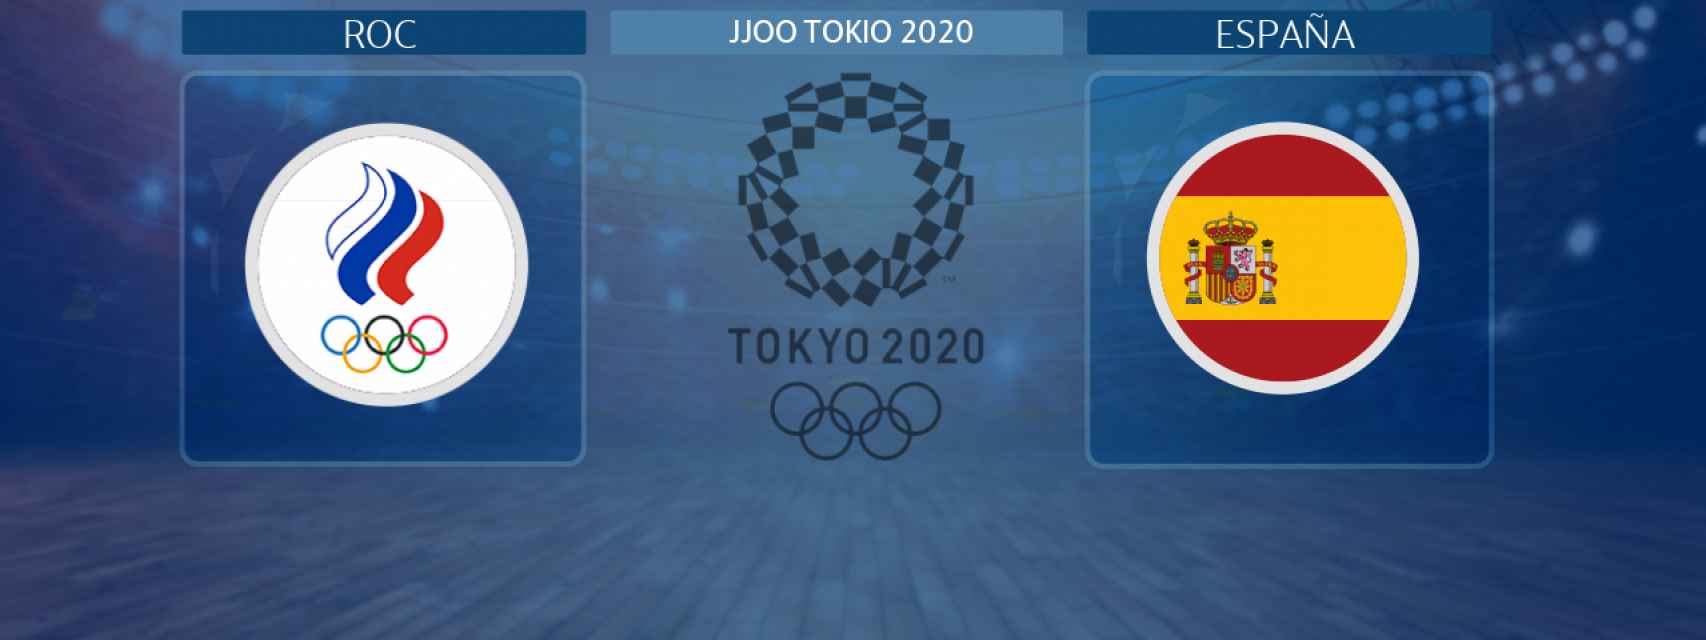 España - ROC, partido de balonmano femenino de los JJOO Tokio 2020